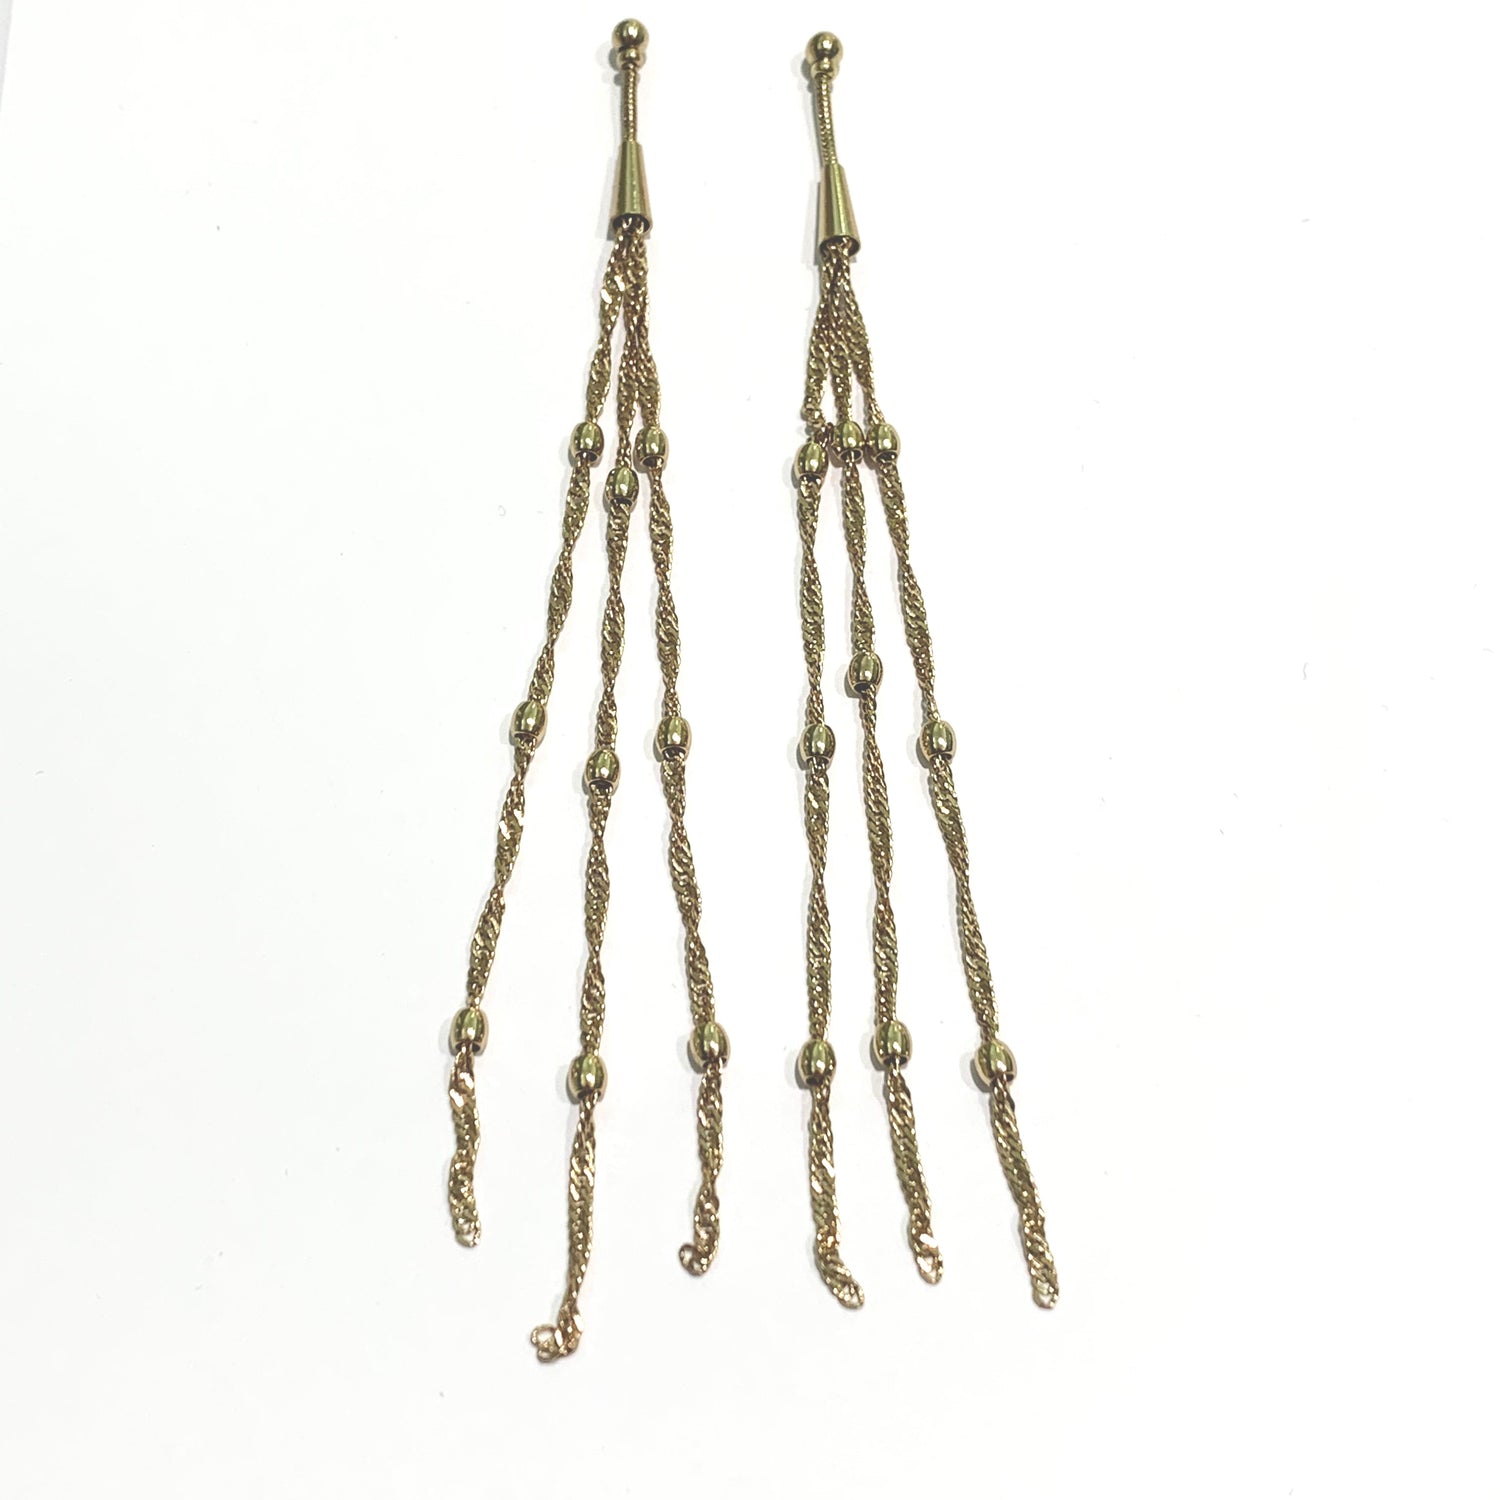 Orecchini pendenti in bijoux bagnati in oro giallo con tre fili pendenti.  Lunghezza 13 cm.  Spessore filo 0,2 cm.  Chiusura con farfalline.  Spedizione gratuita con confezione regalo. 